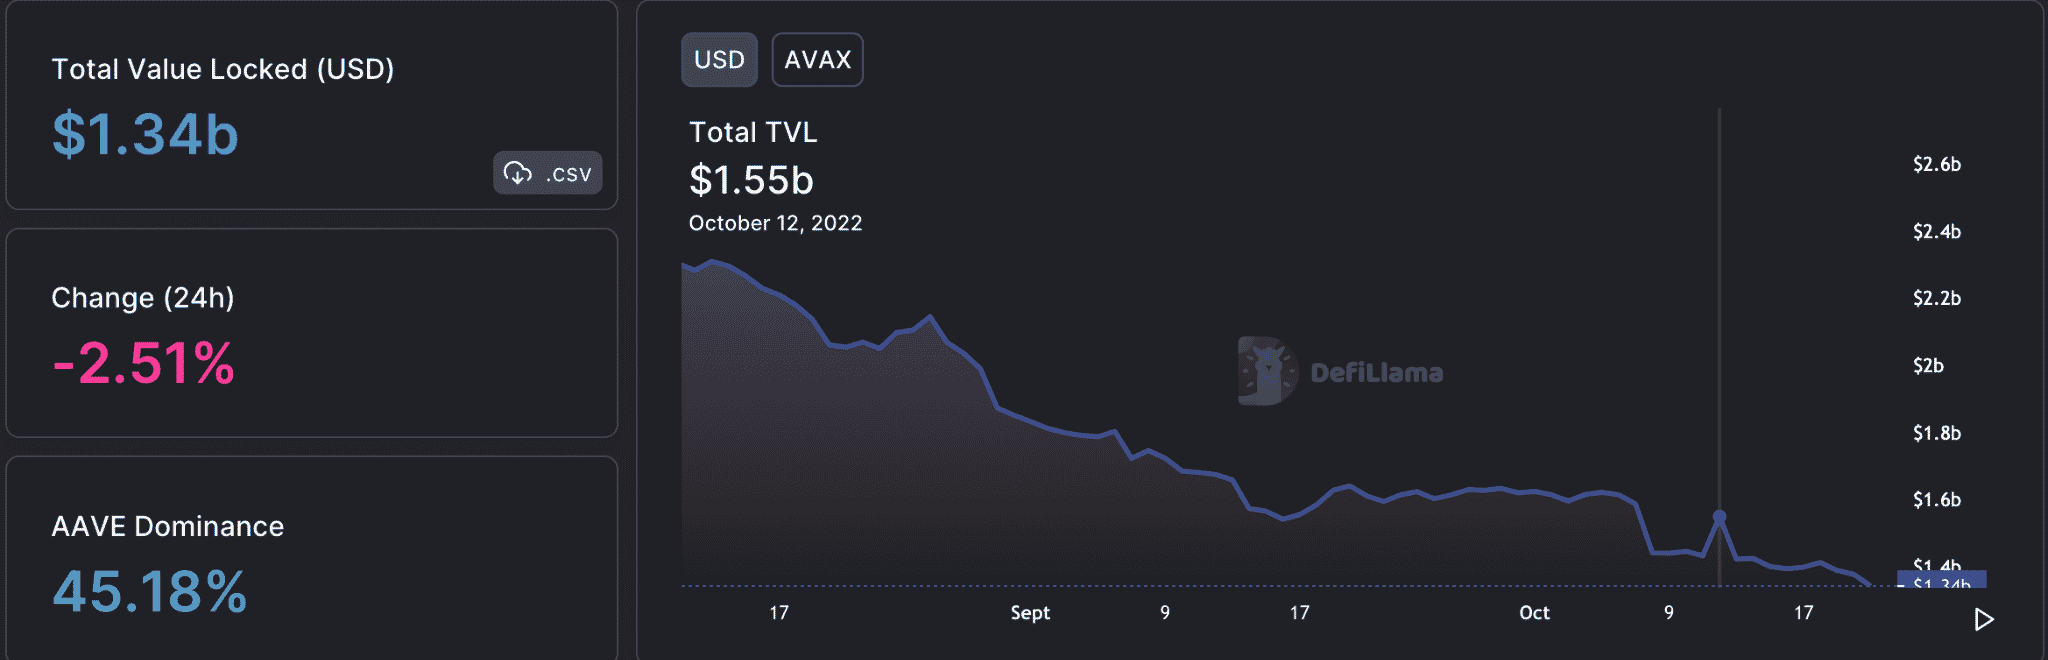 Avalanche: DeFi, NFT có thể là ân huệ tiết kiệm của AVAX, nhưng giá của nó có thể chứng thực - Tin Tức Bitcoin 2024